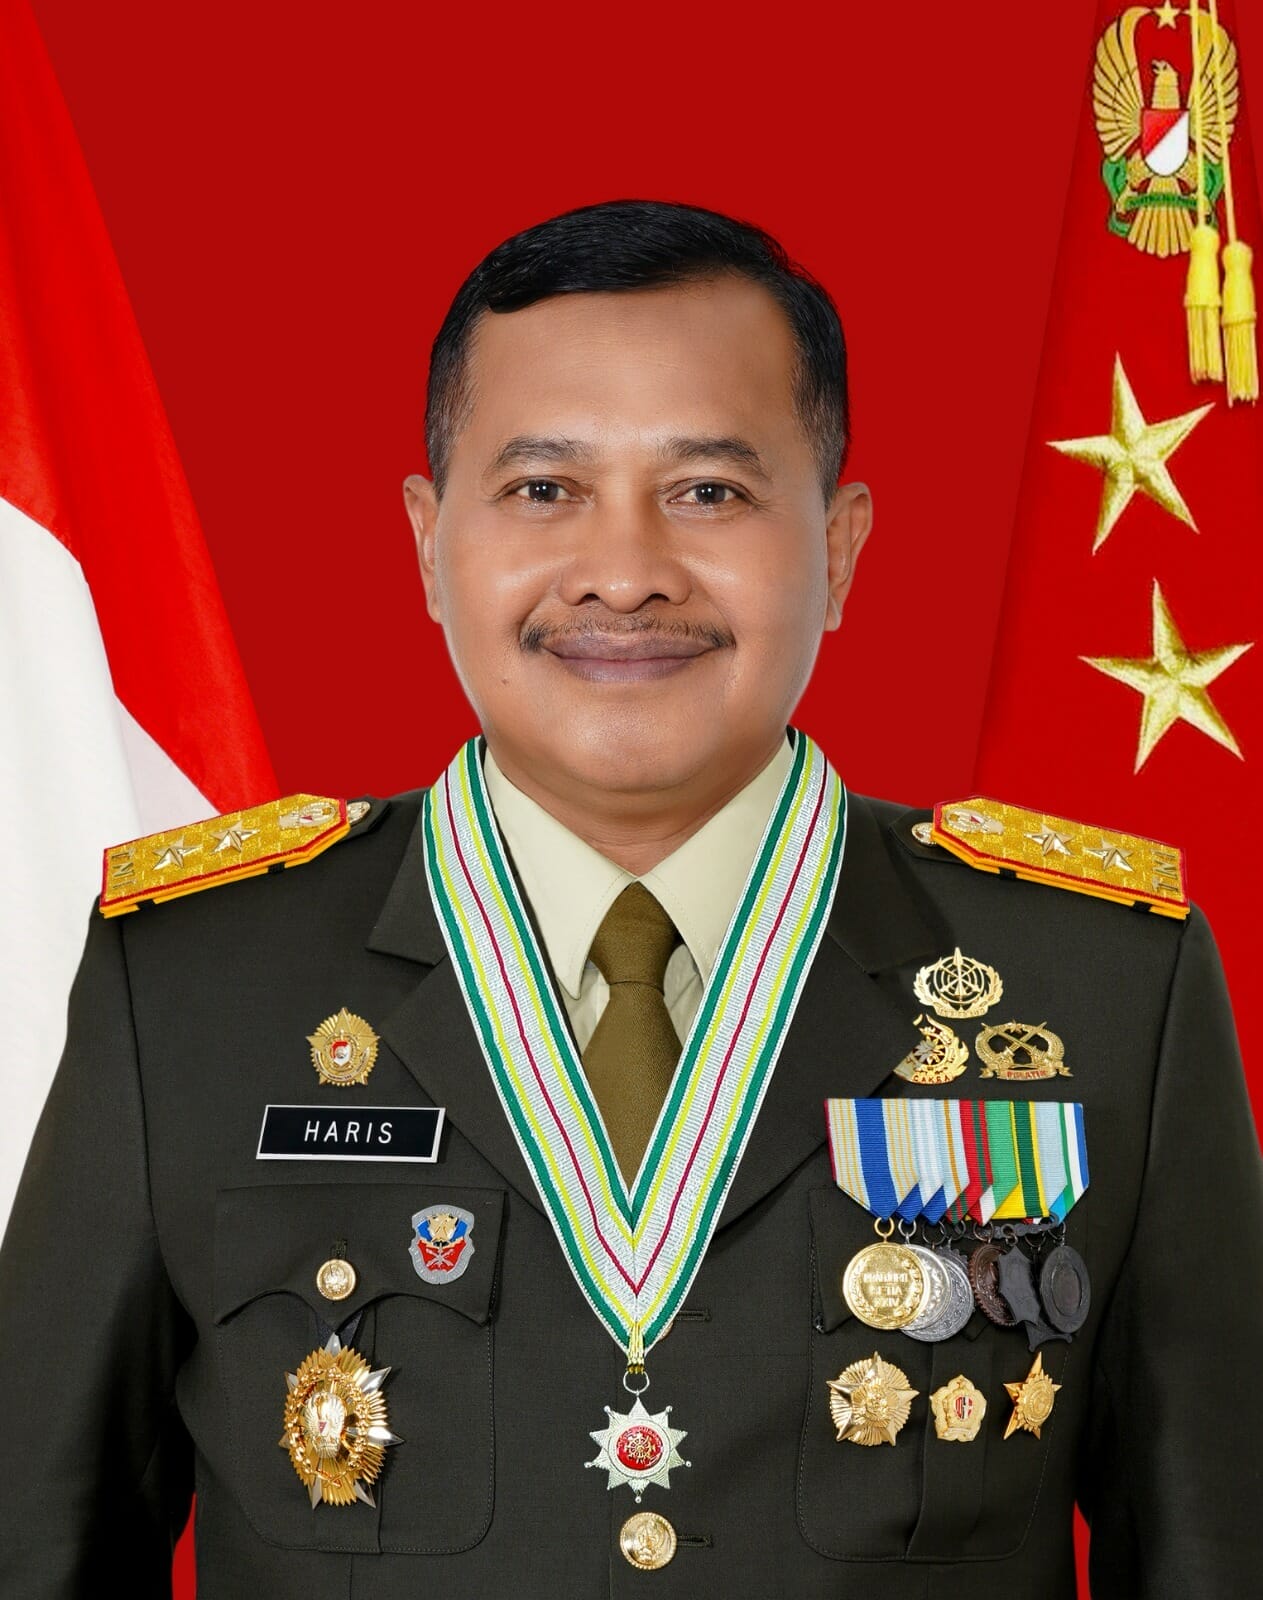 Mayor Jenderal TNI Dr. Haris Sarjana, M.M., M.Tr.(Han)., CGCAE.